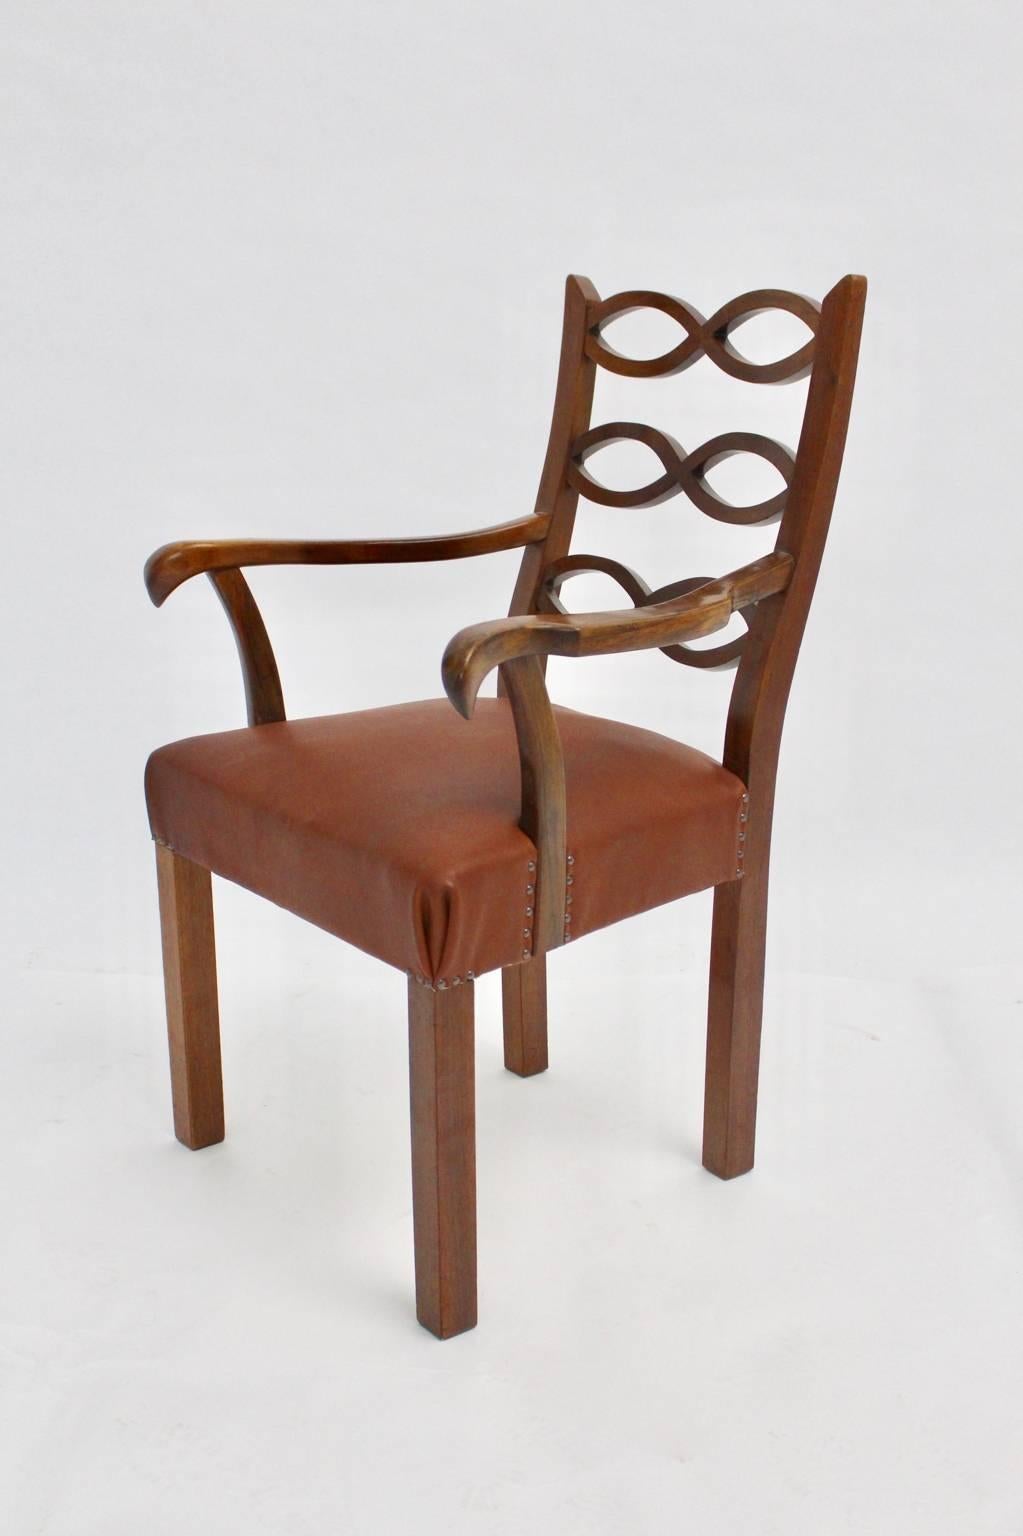 Art deco Sessel aus Nussbaum und Leder, entworfen von Hugo Gorge, um 1920 in Wien.
Hugo Gorge war ein österreichischer Architekt und Mitglied des Werkbundes.
Besonders hervorzuheben ist seine Arbeit und Gestaltung für den Österreichischen Werkbund